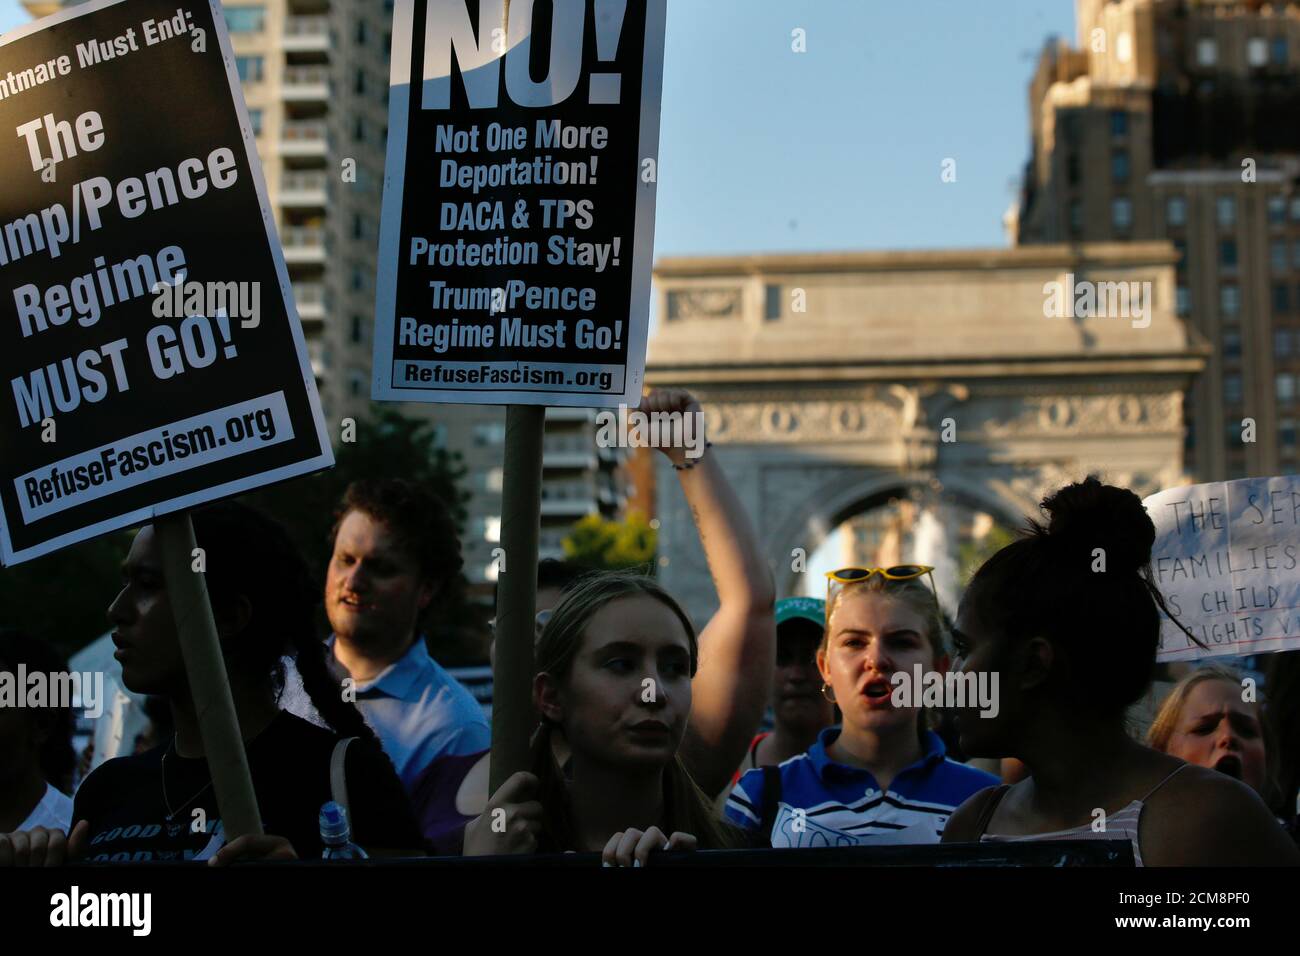 La gente protesta contra la política de la administración Trump de separar a las familias inmigrantes sospechosas de entrada ilegal, en Nueva York, NY, EE.UU., 19 de junio de 2018. REUTERS/Brendan McDermid Foto de stock